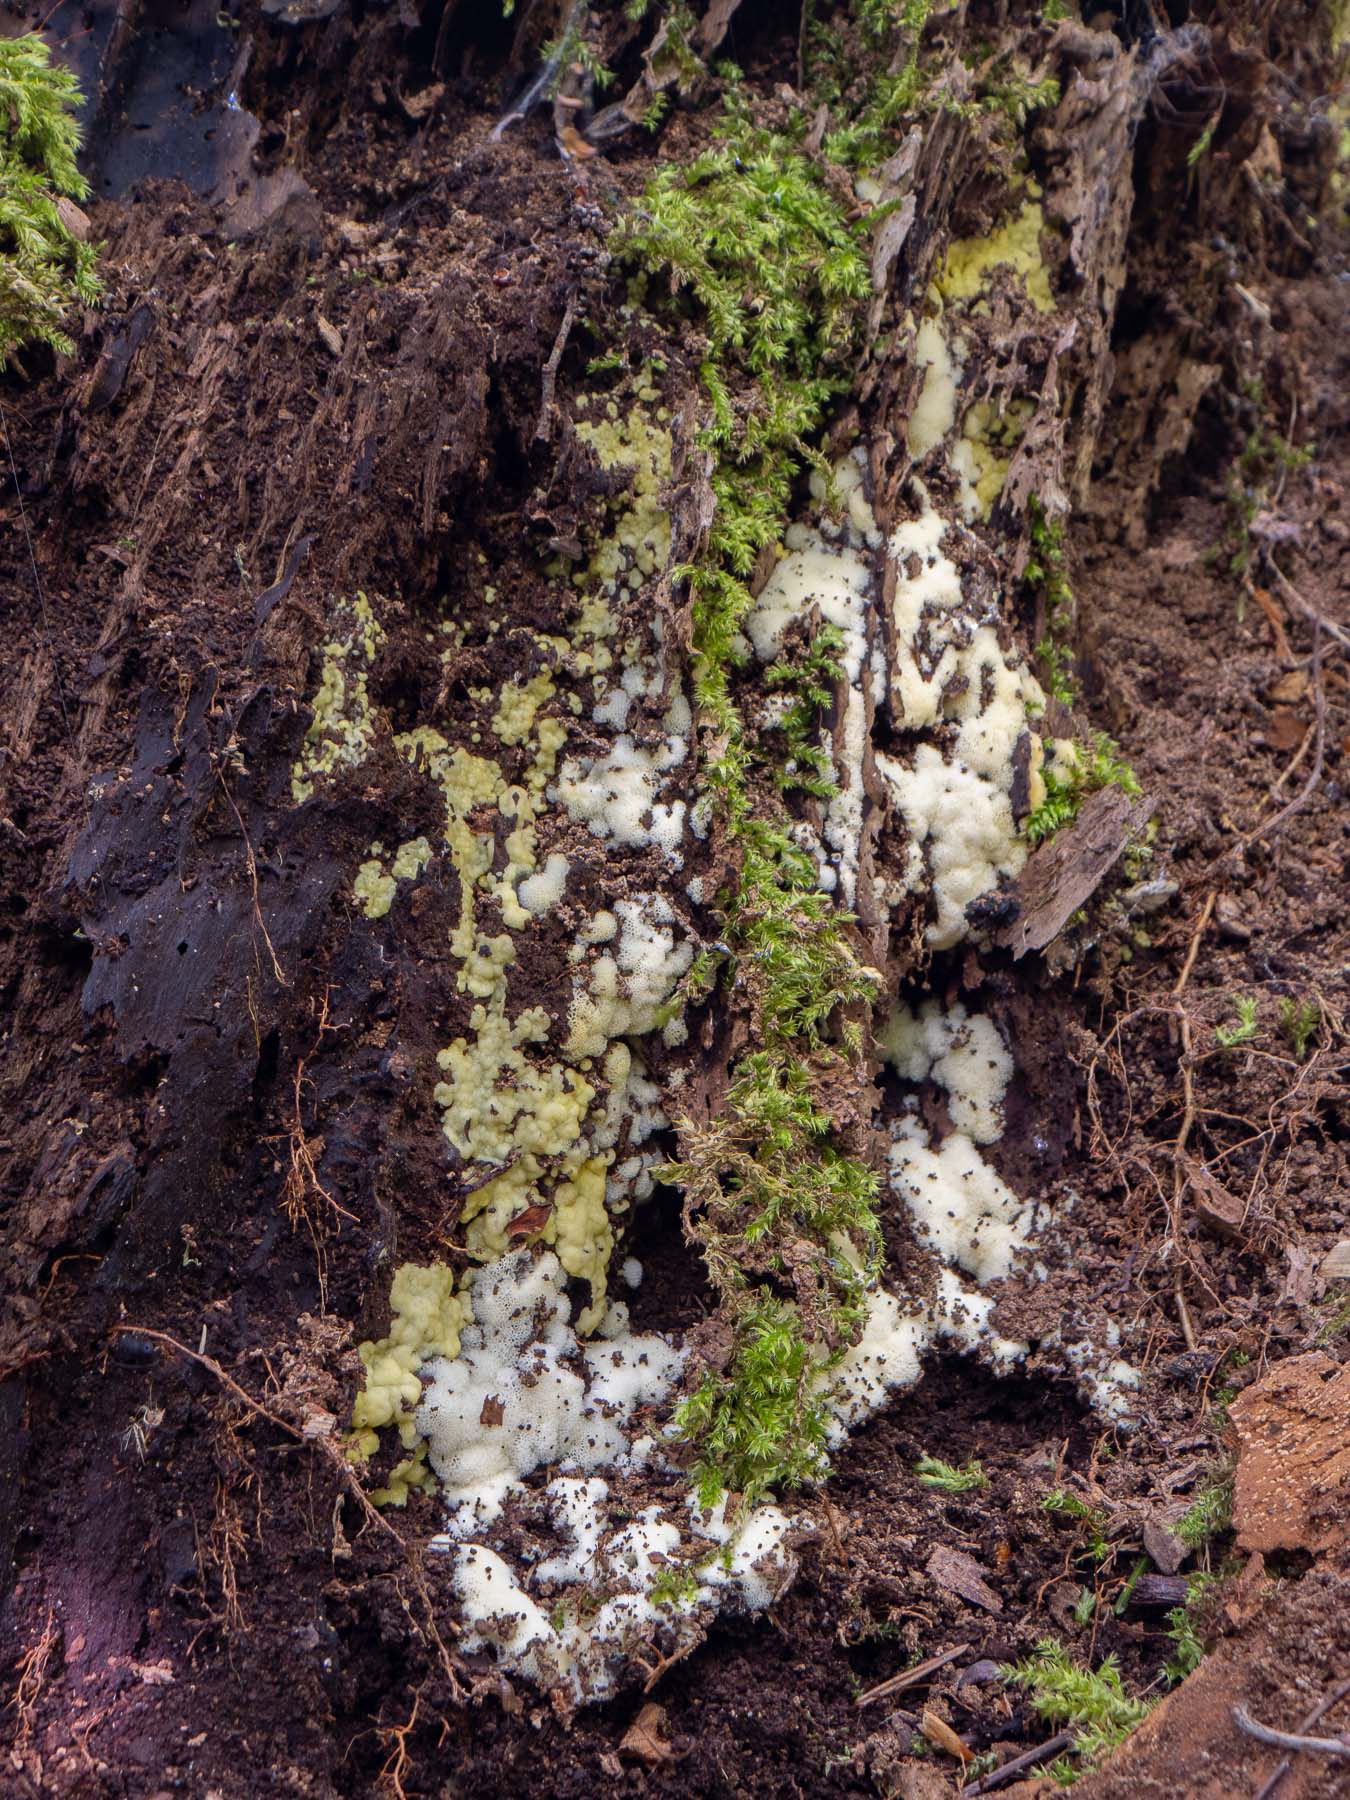 Сeratiomyxa fruticulosa var. porioides. Природный парк G?rv?ln, июль 2020 года. Автор фото: Сутормина Марина